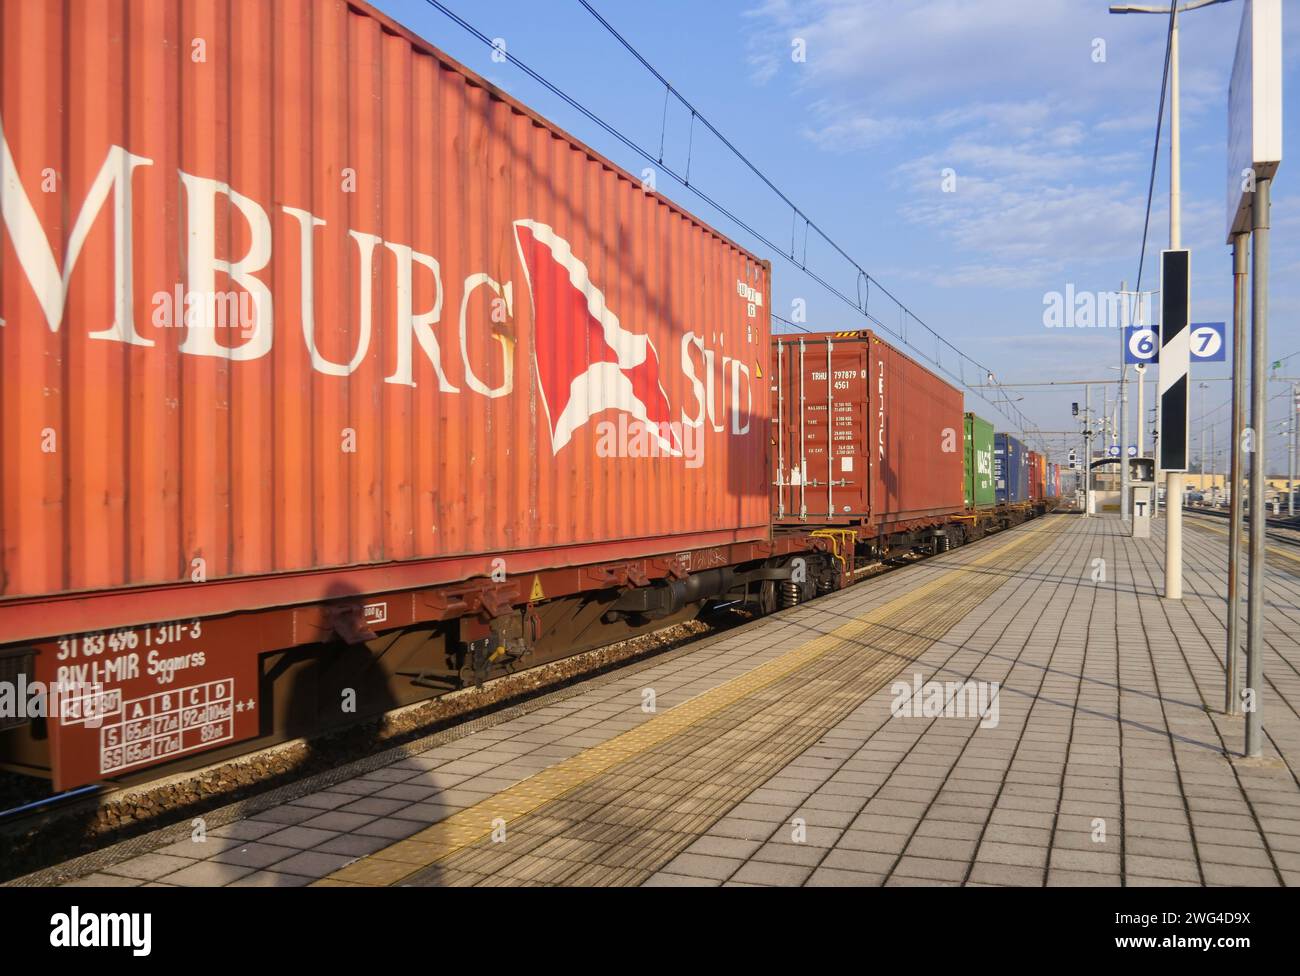 La proposta mira a incoraggiare il trasferimento di merci al sistema ferroviario, rispetto al trasporto su strada, per ridurre l'impatto ambientale ed energetico. Credito: Independent Photo Agency Srl/Alamy Live News Foto Stock